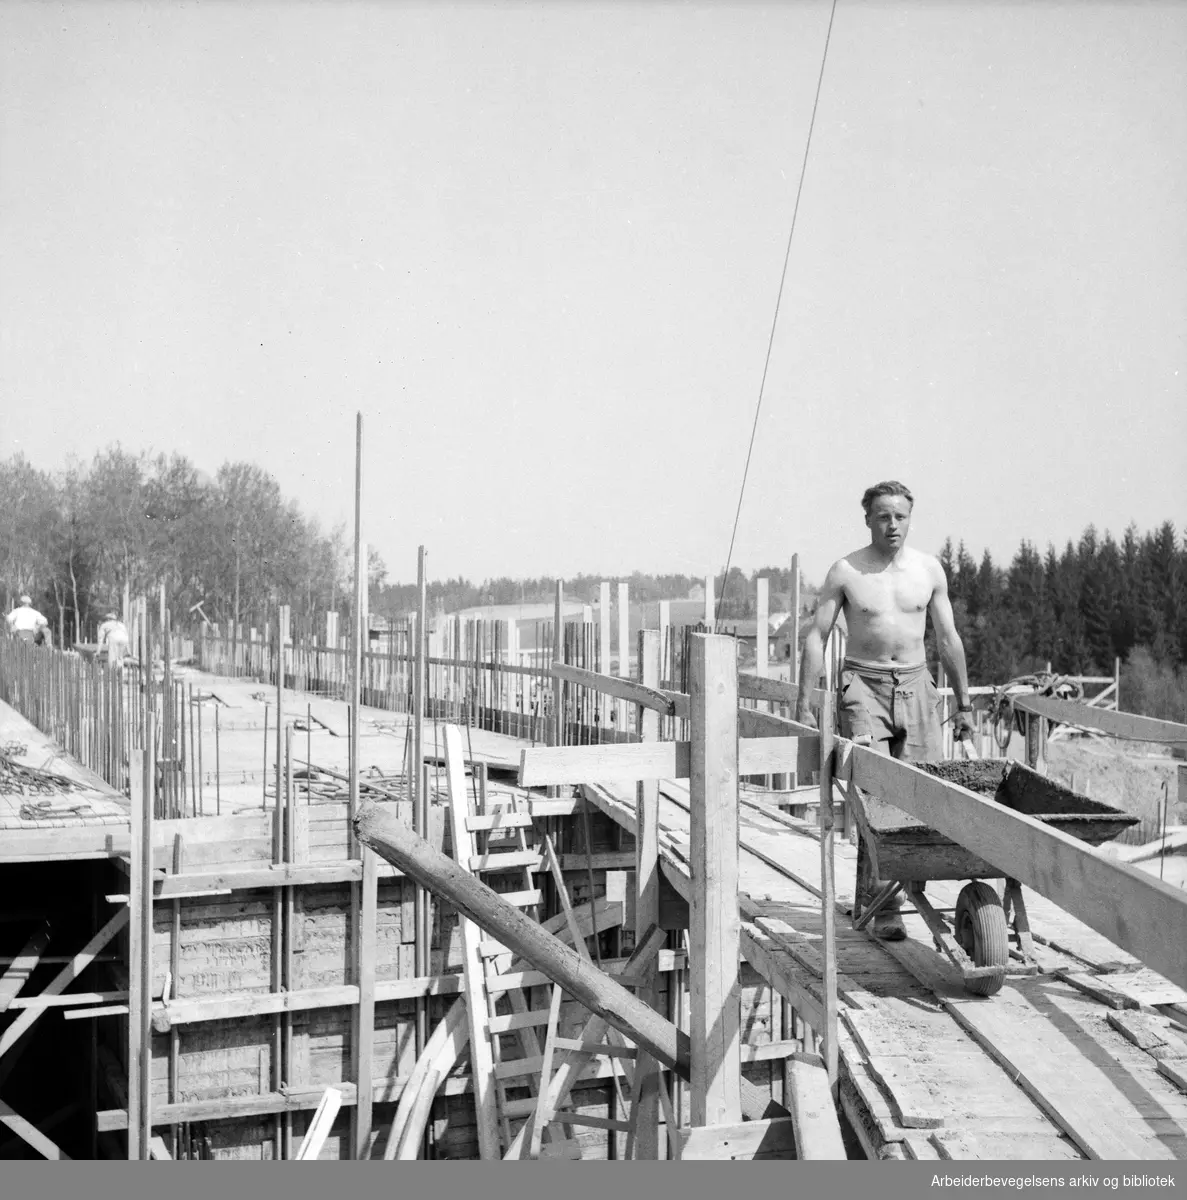 Mann med trillebår. Bygningsarbeider. Antatt Oslo. 1955 - 1960.